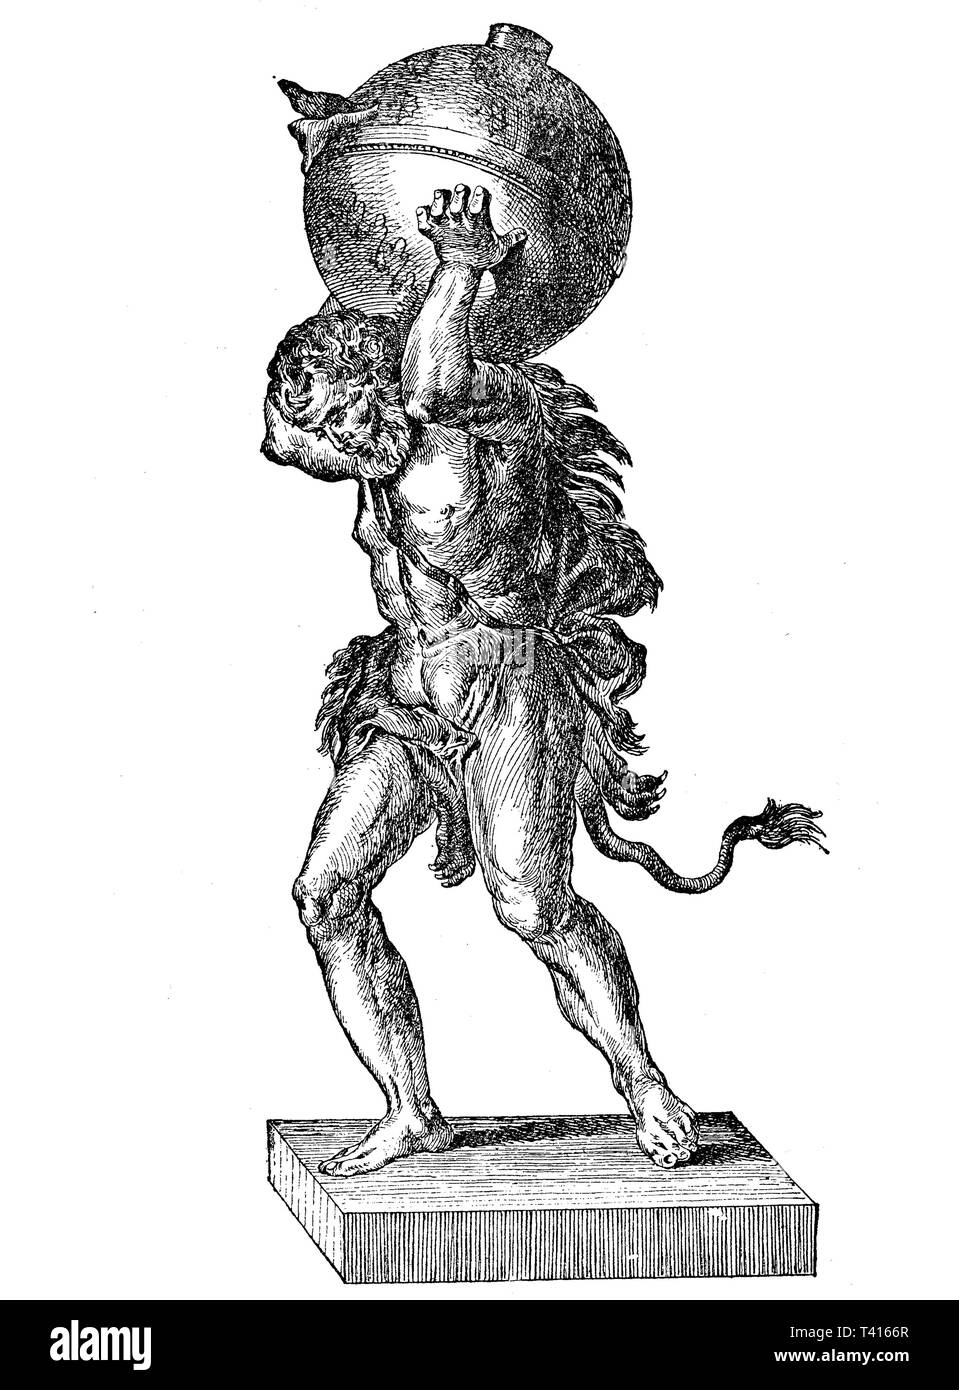 Romano antico olio lampada: Atlas detiene il cielo; leggenda mitologica Foto Stock